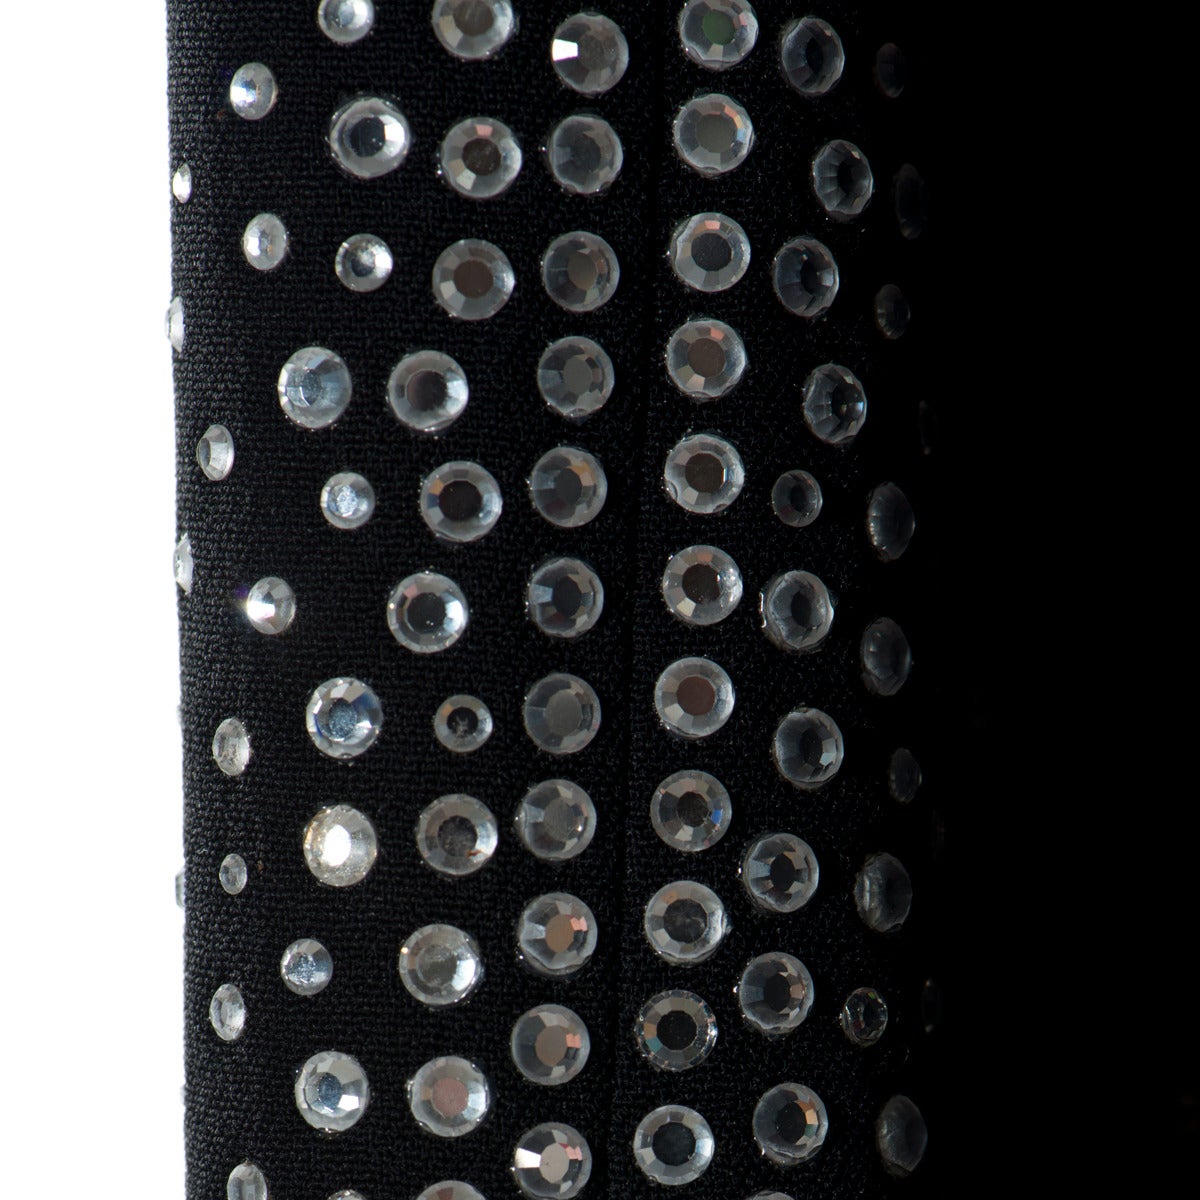 Gai Mattiolo Couture Swarovsky Crystals Black Dress In Excellent Condition In Gazzaniga (BG), IT